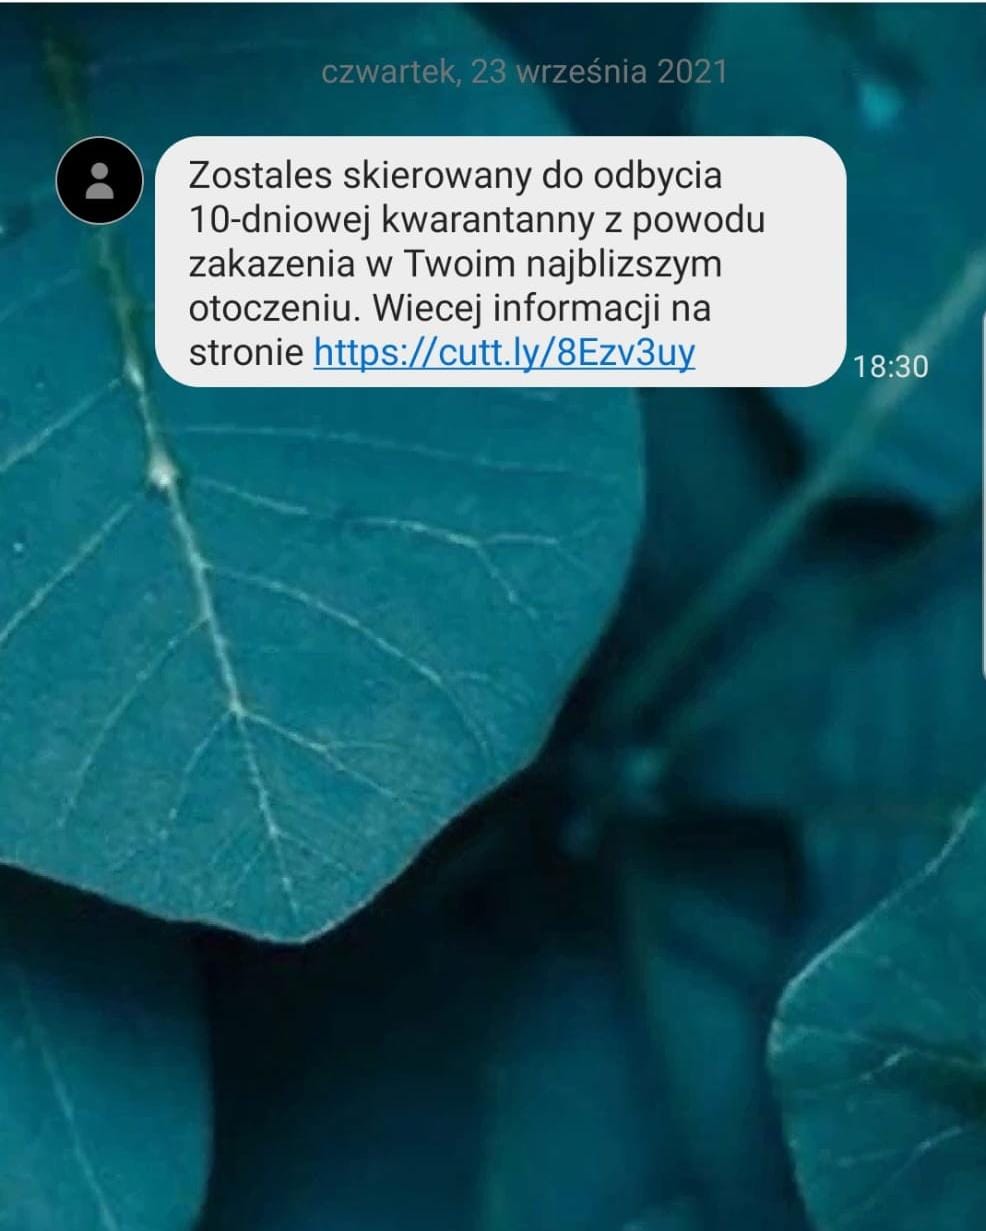 Przykładowy fałszywy SMS o Kwarantannie zrzut ekranu